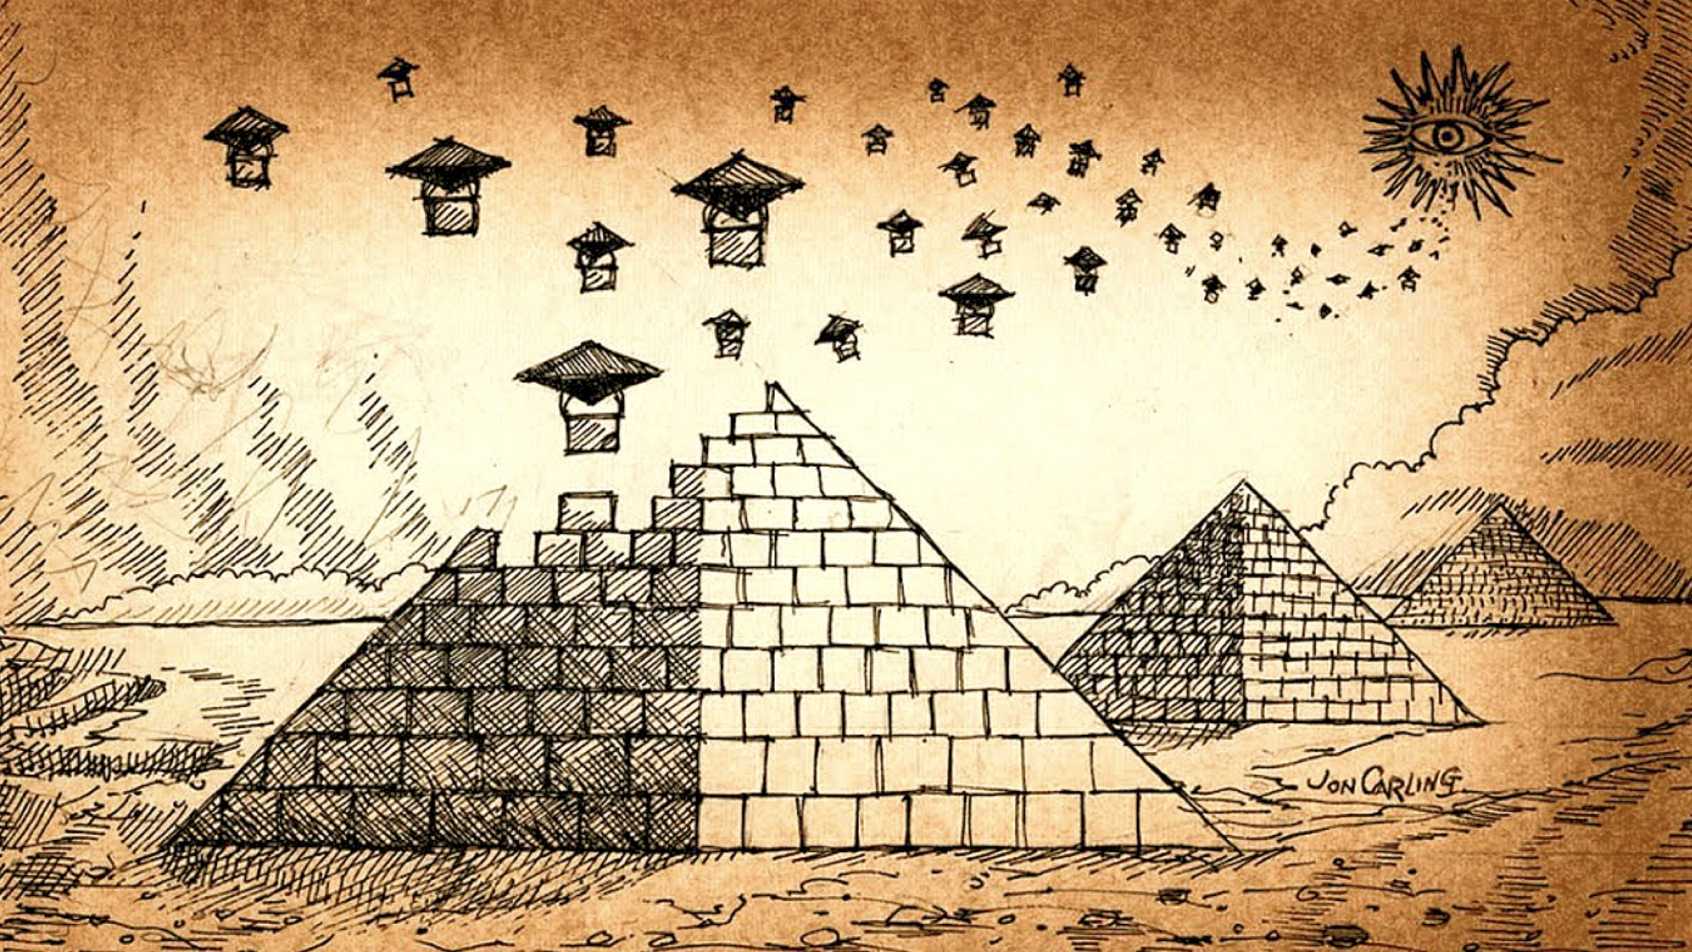 Bau vun Pyramid